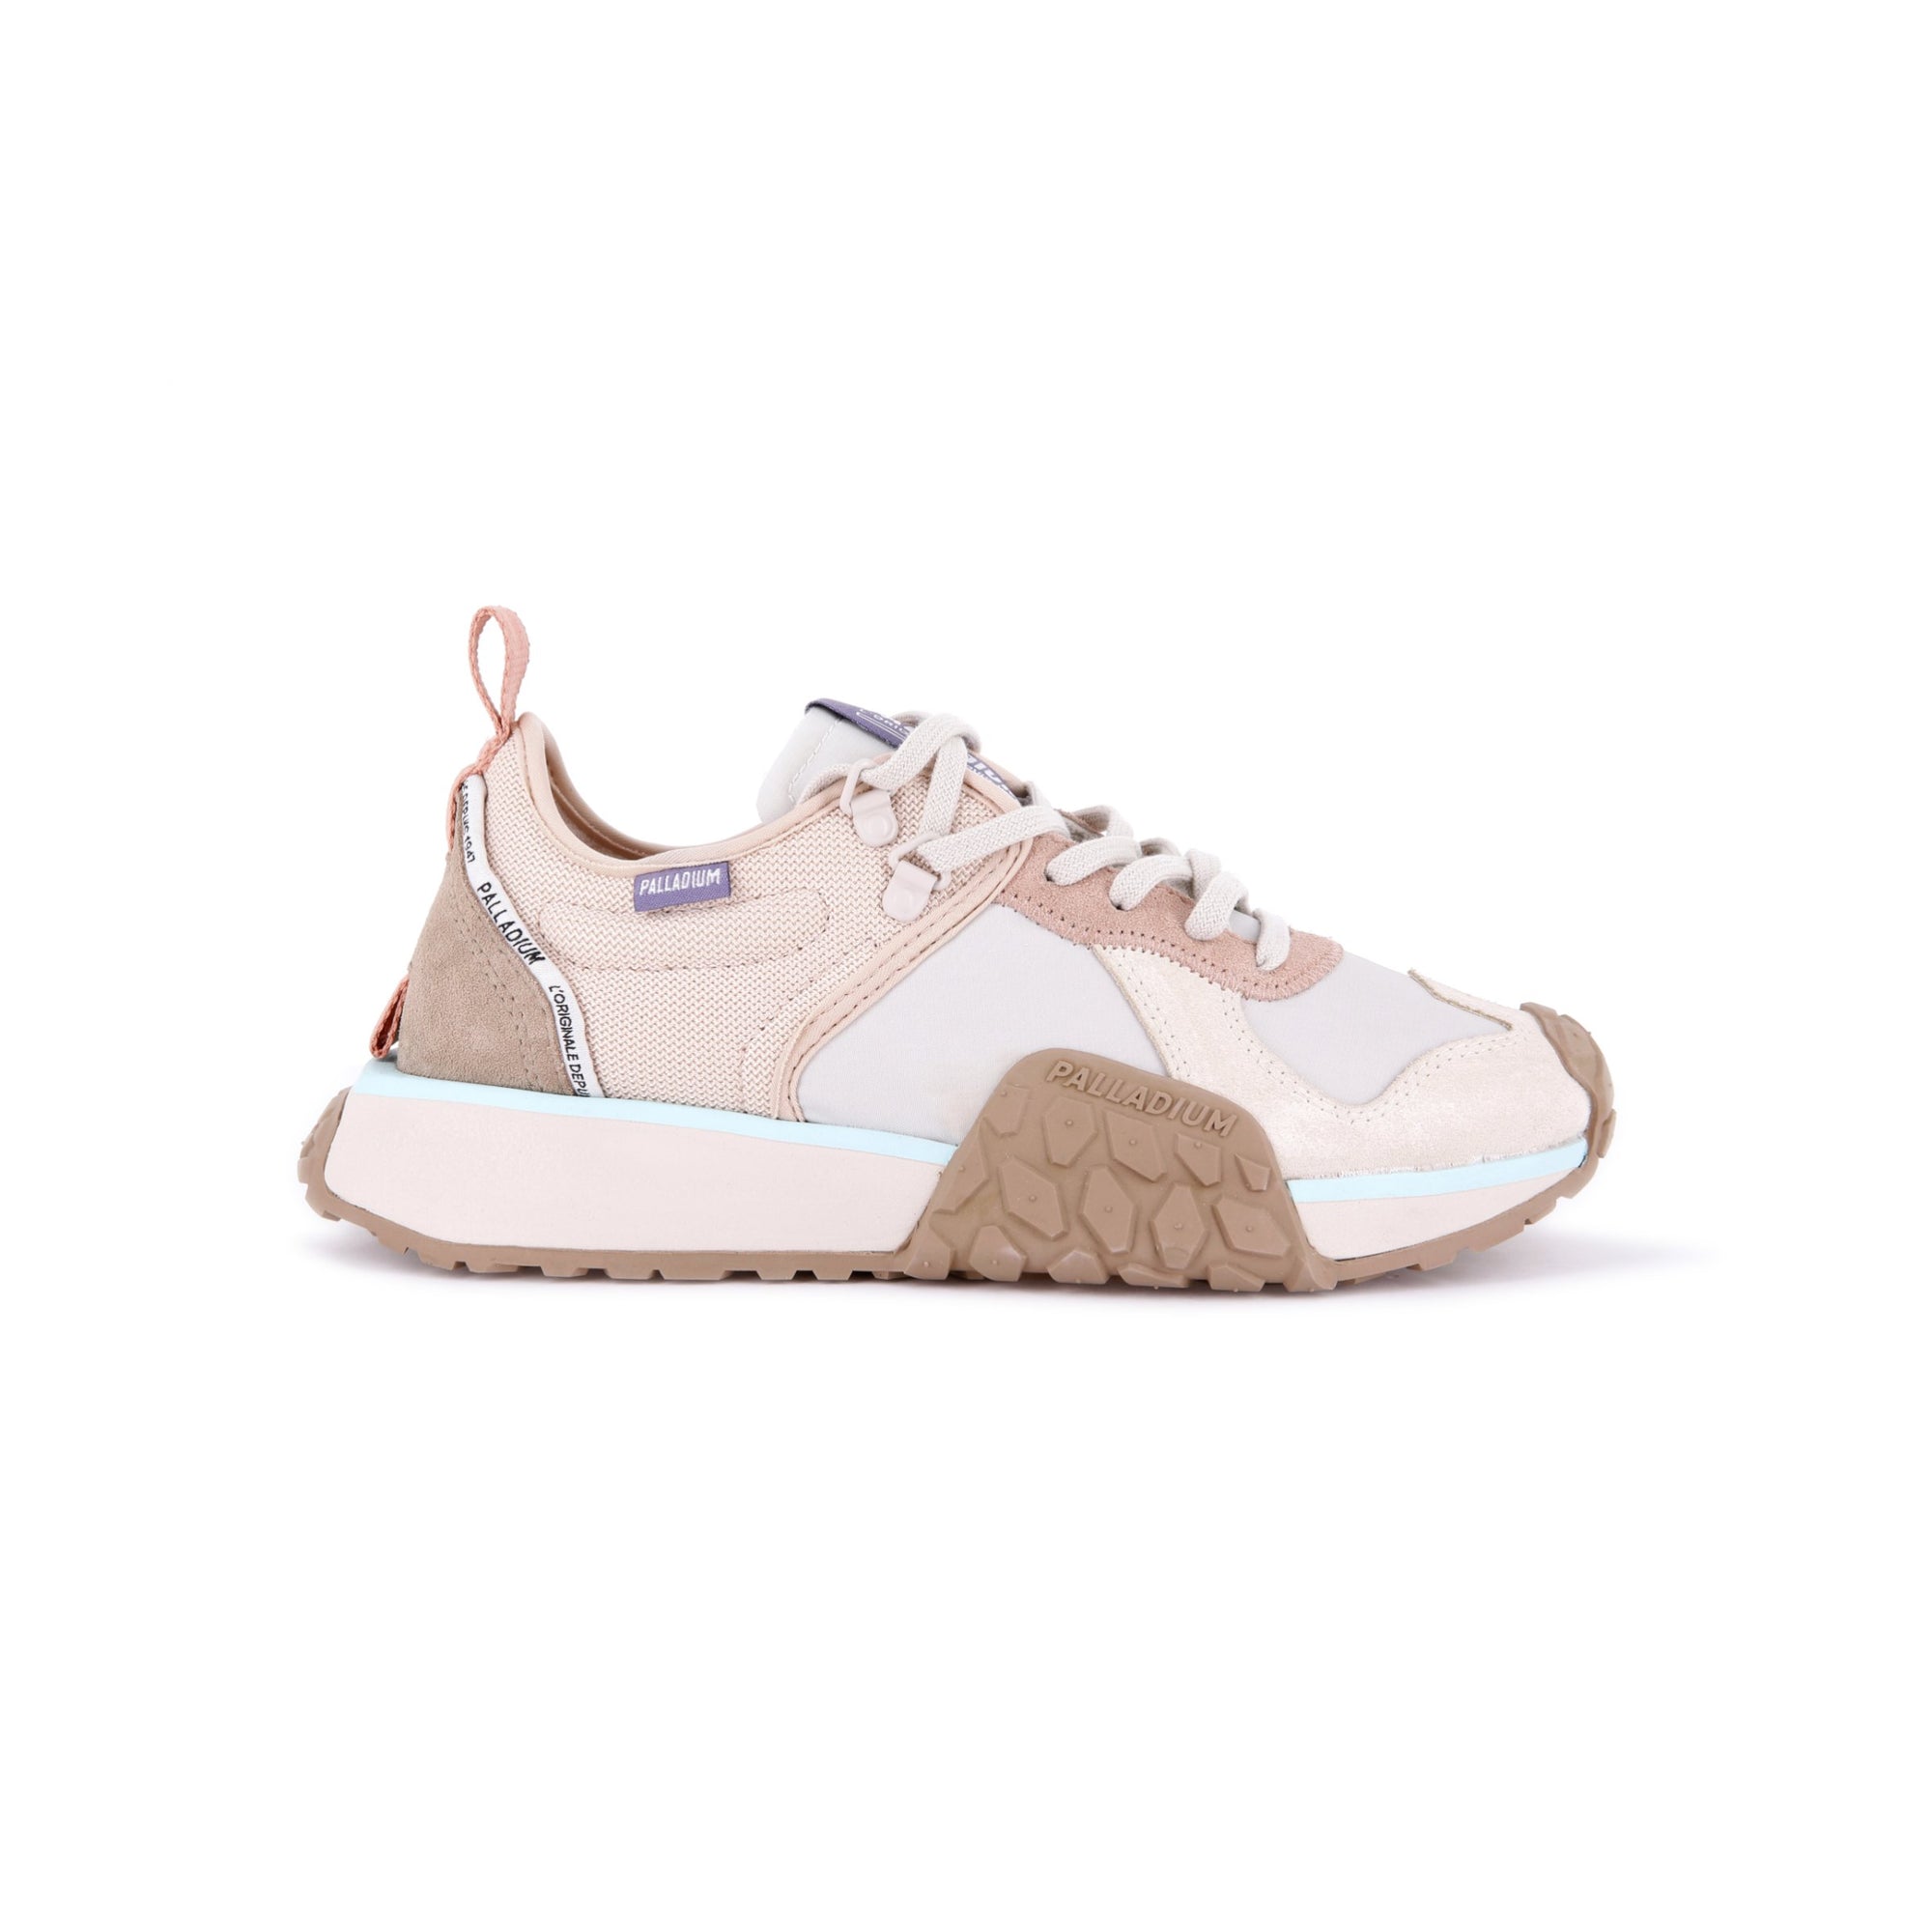 Troop Runner (Sneaker) - Ivory/Cream Moonbean